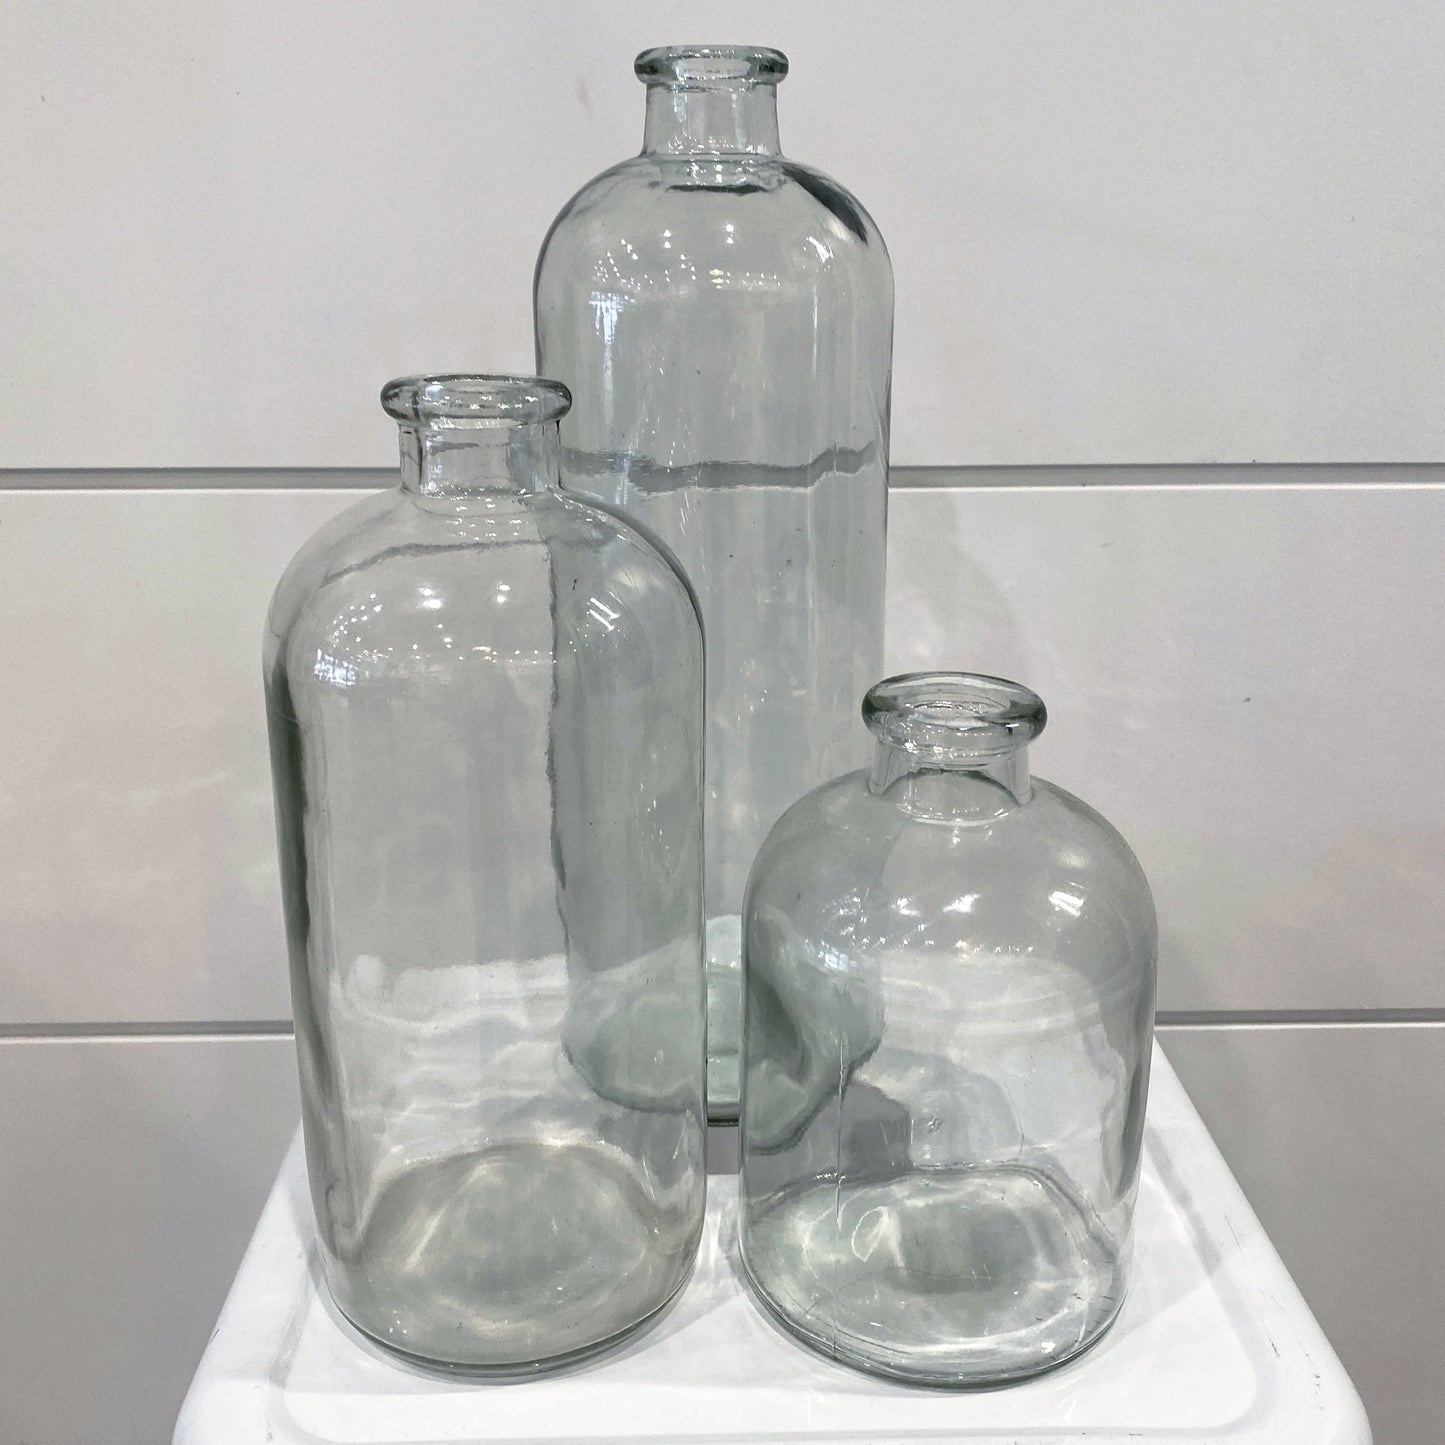 Apothecary Glass Jar